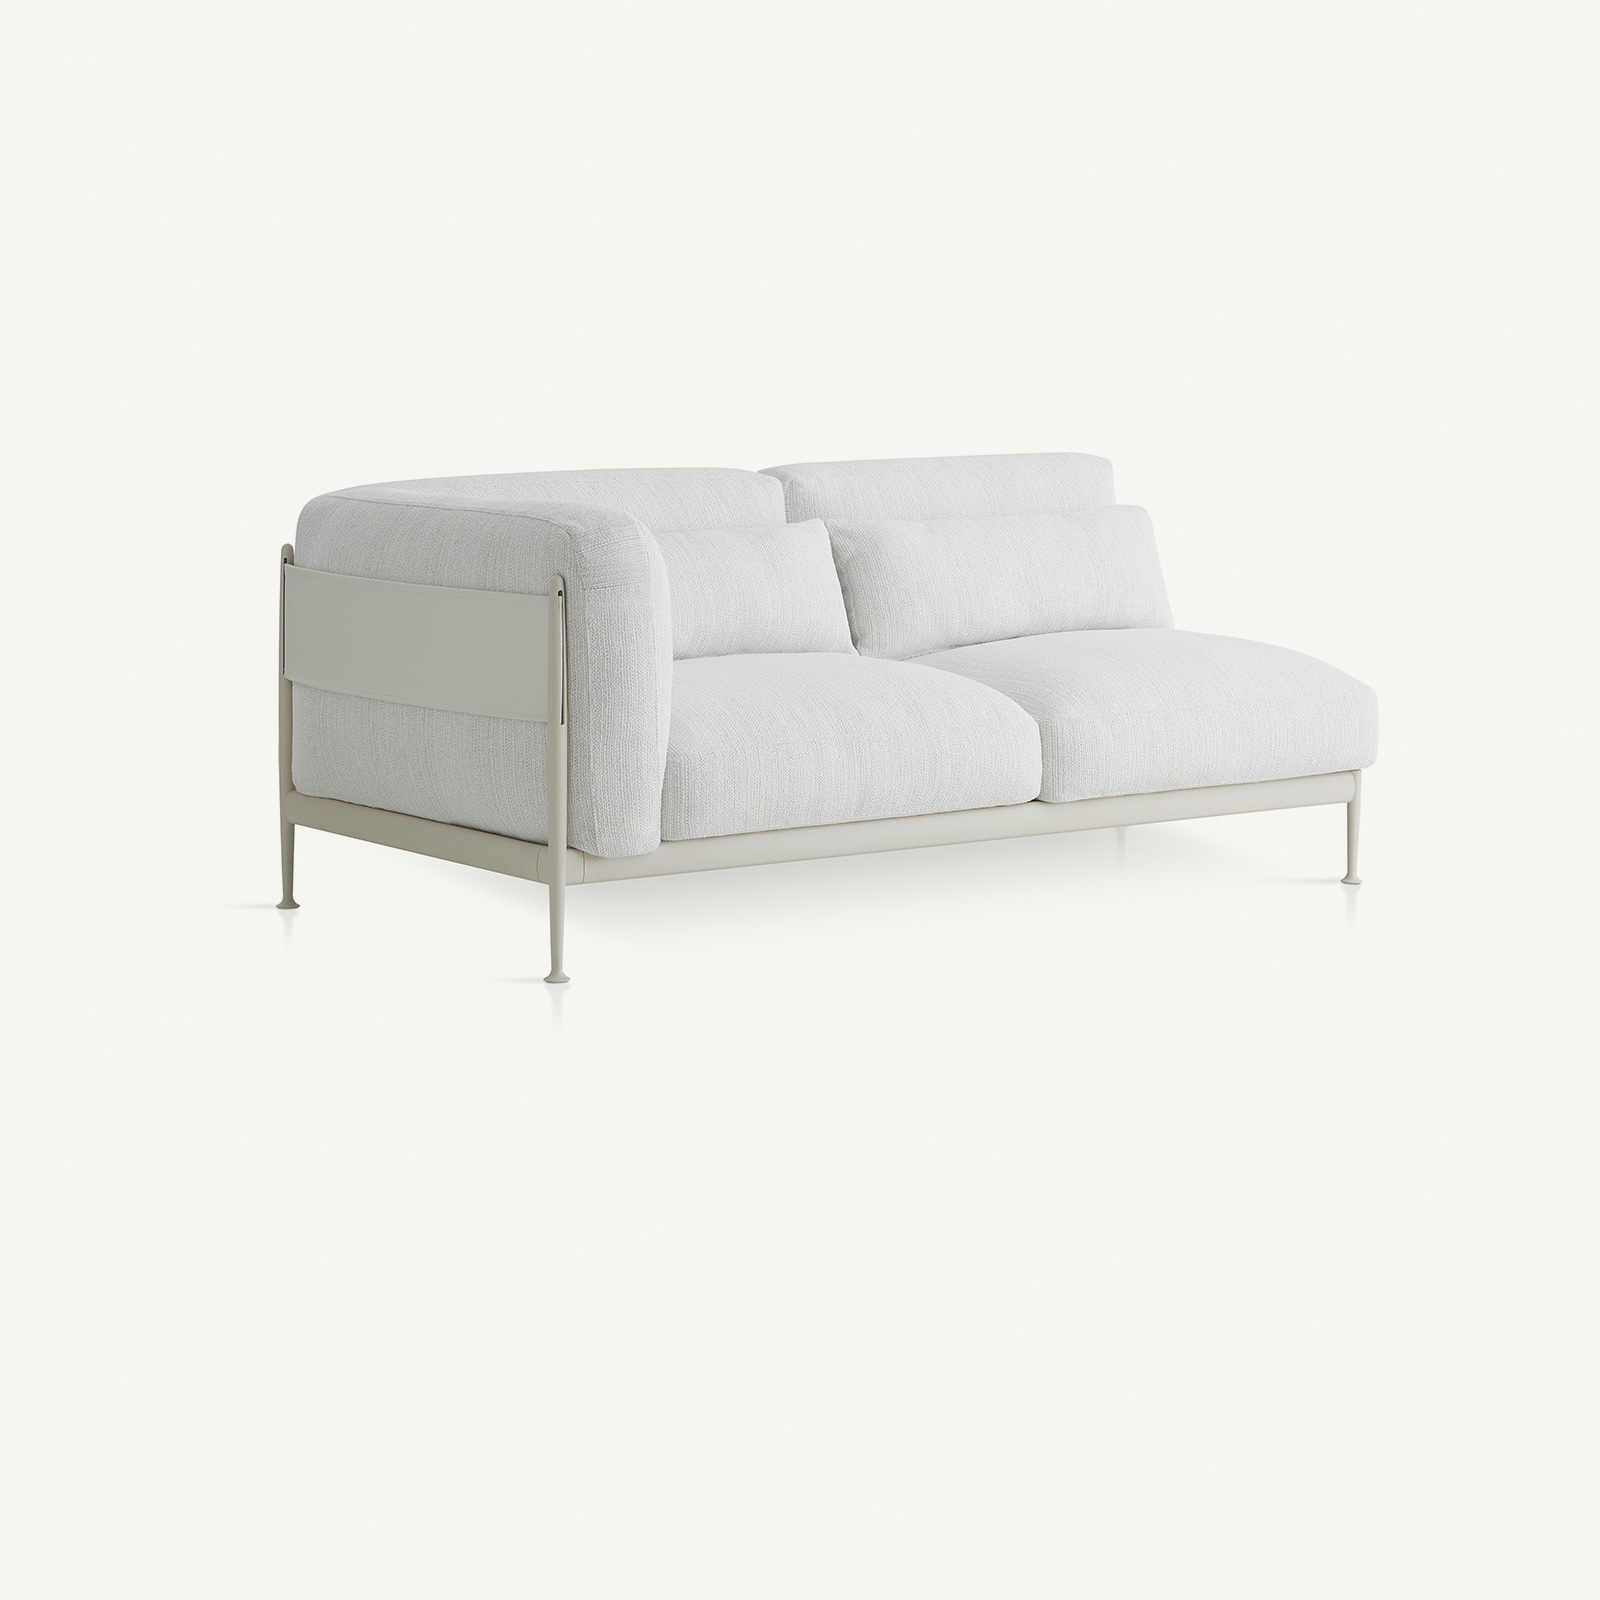 outdoor kollektion - sofas - linkes modul obi